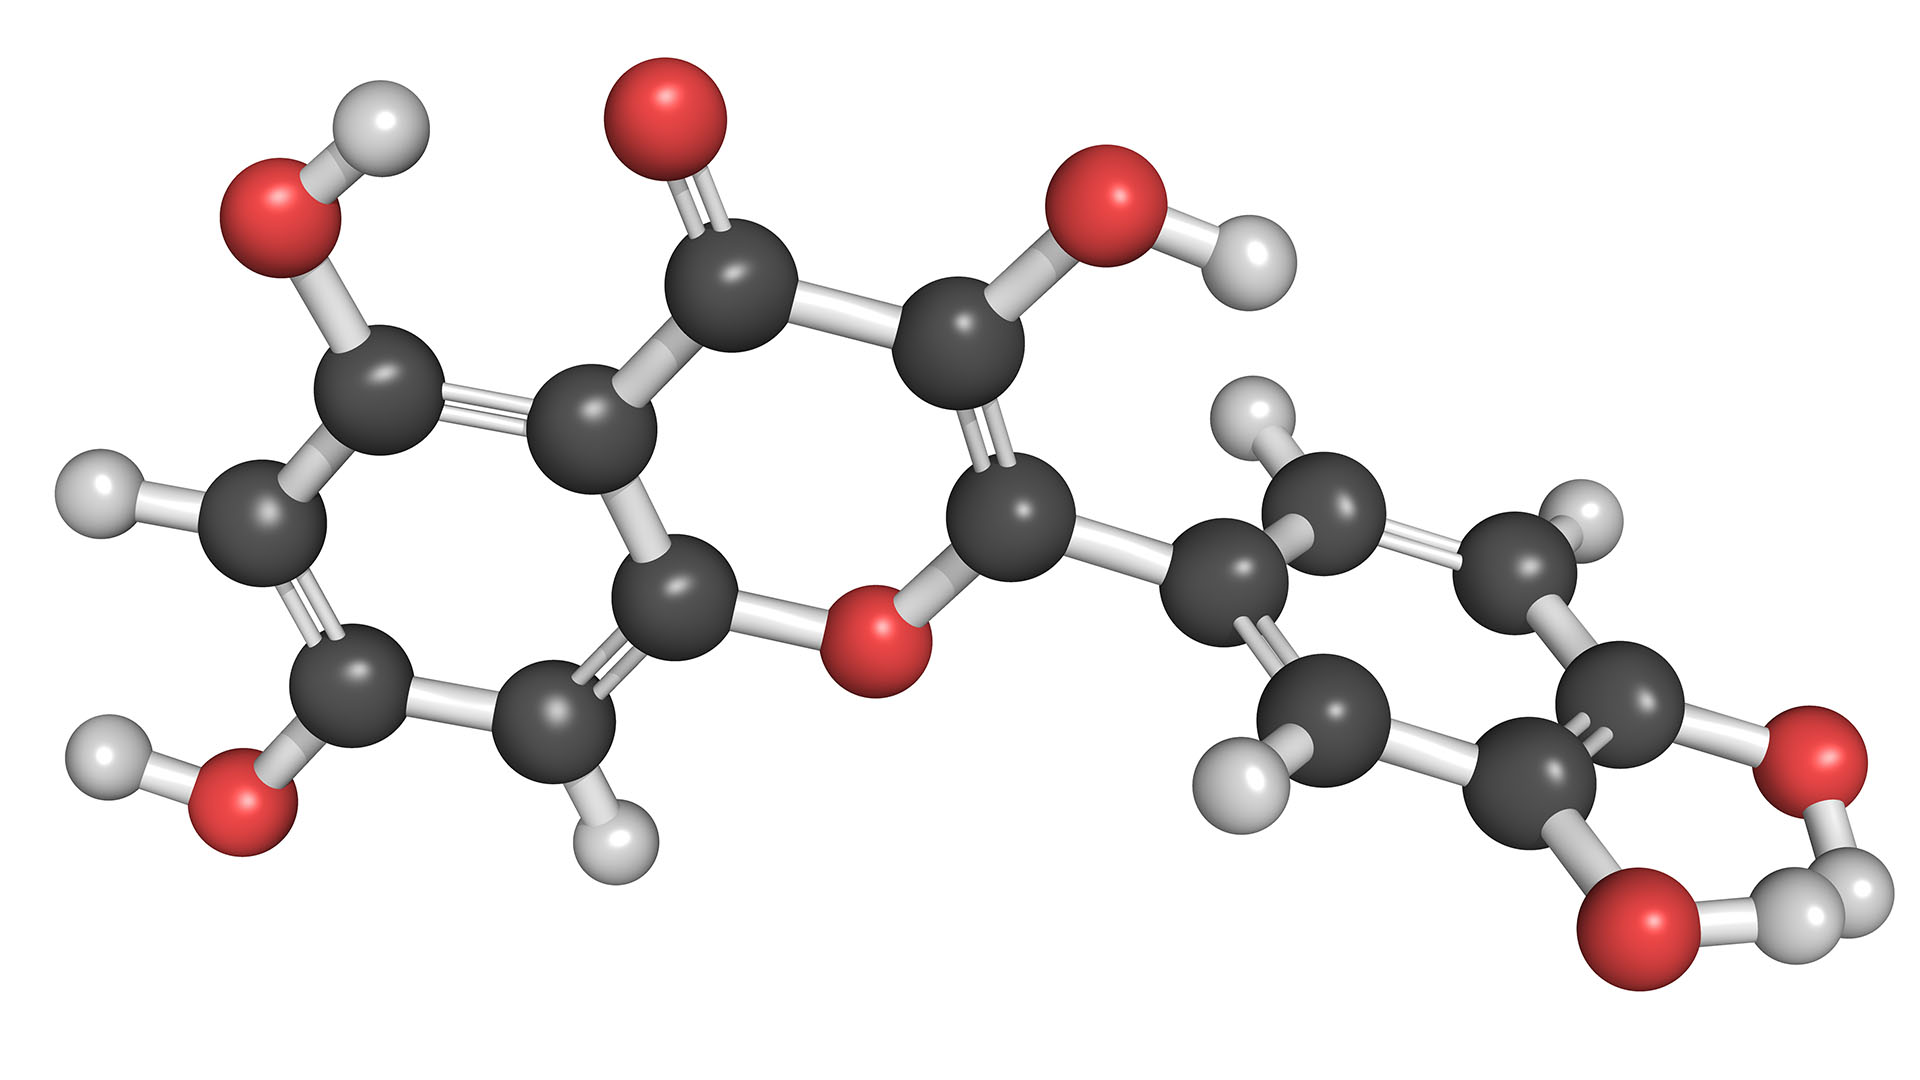 Las moléculas de quercetina son antioxidantes, antiinflamatorias y antialérgicas (Shutterstock)